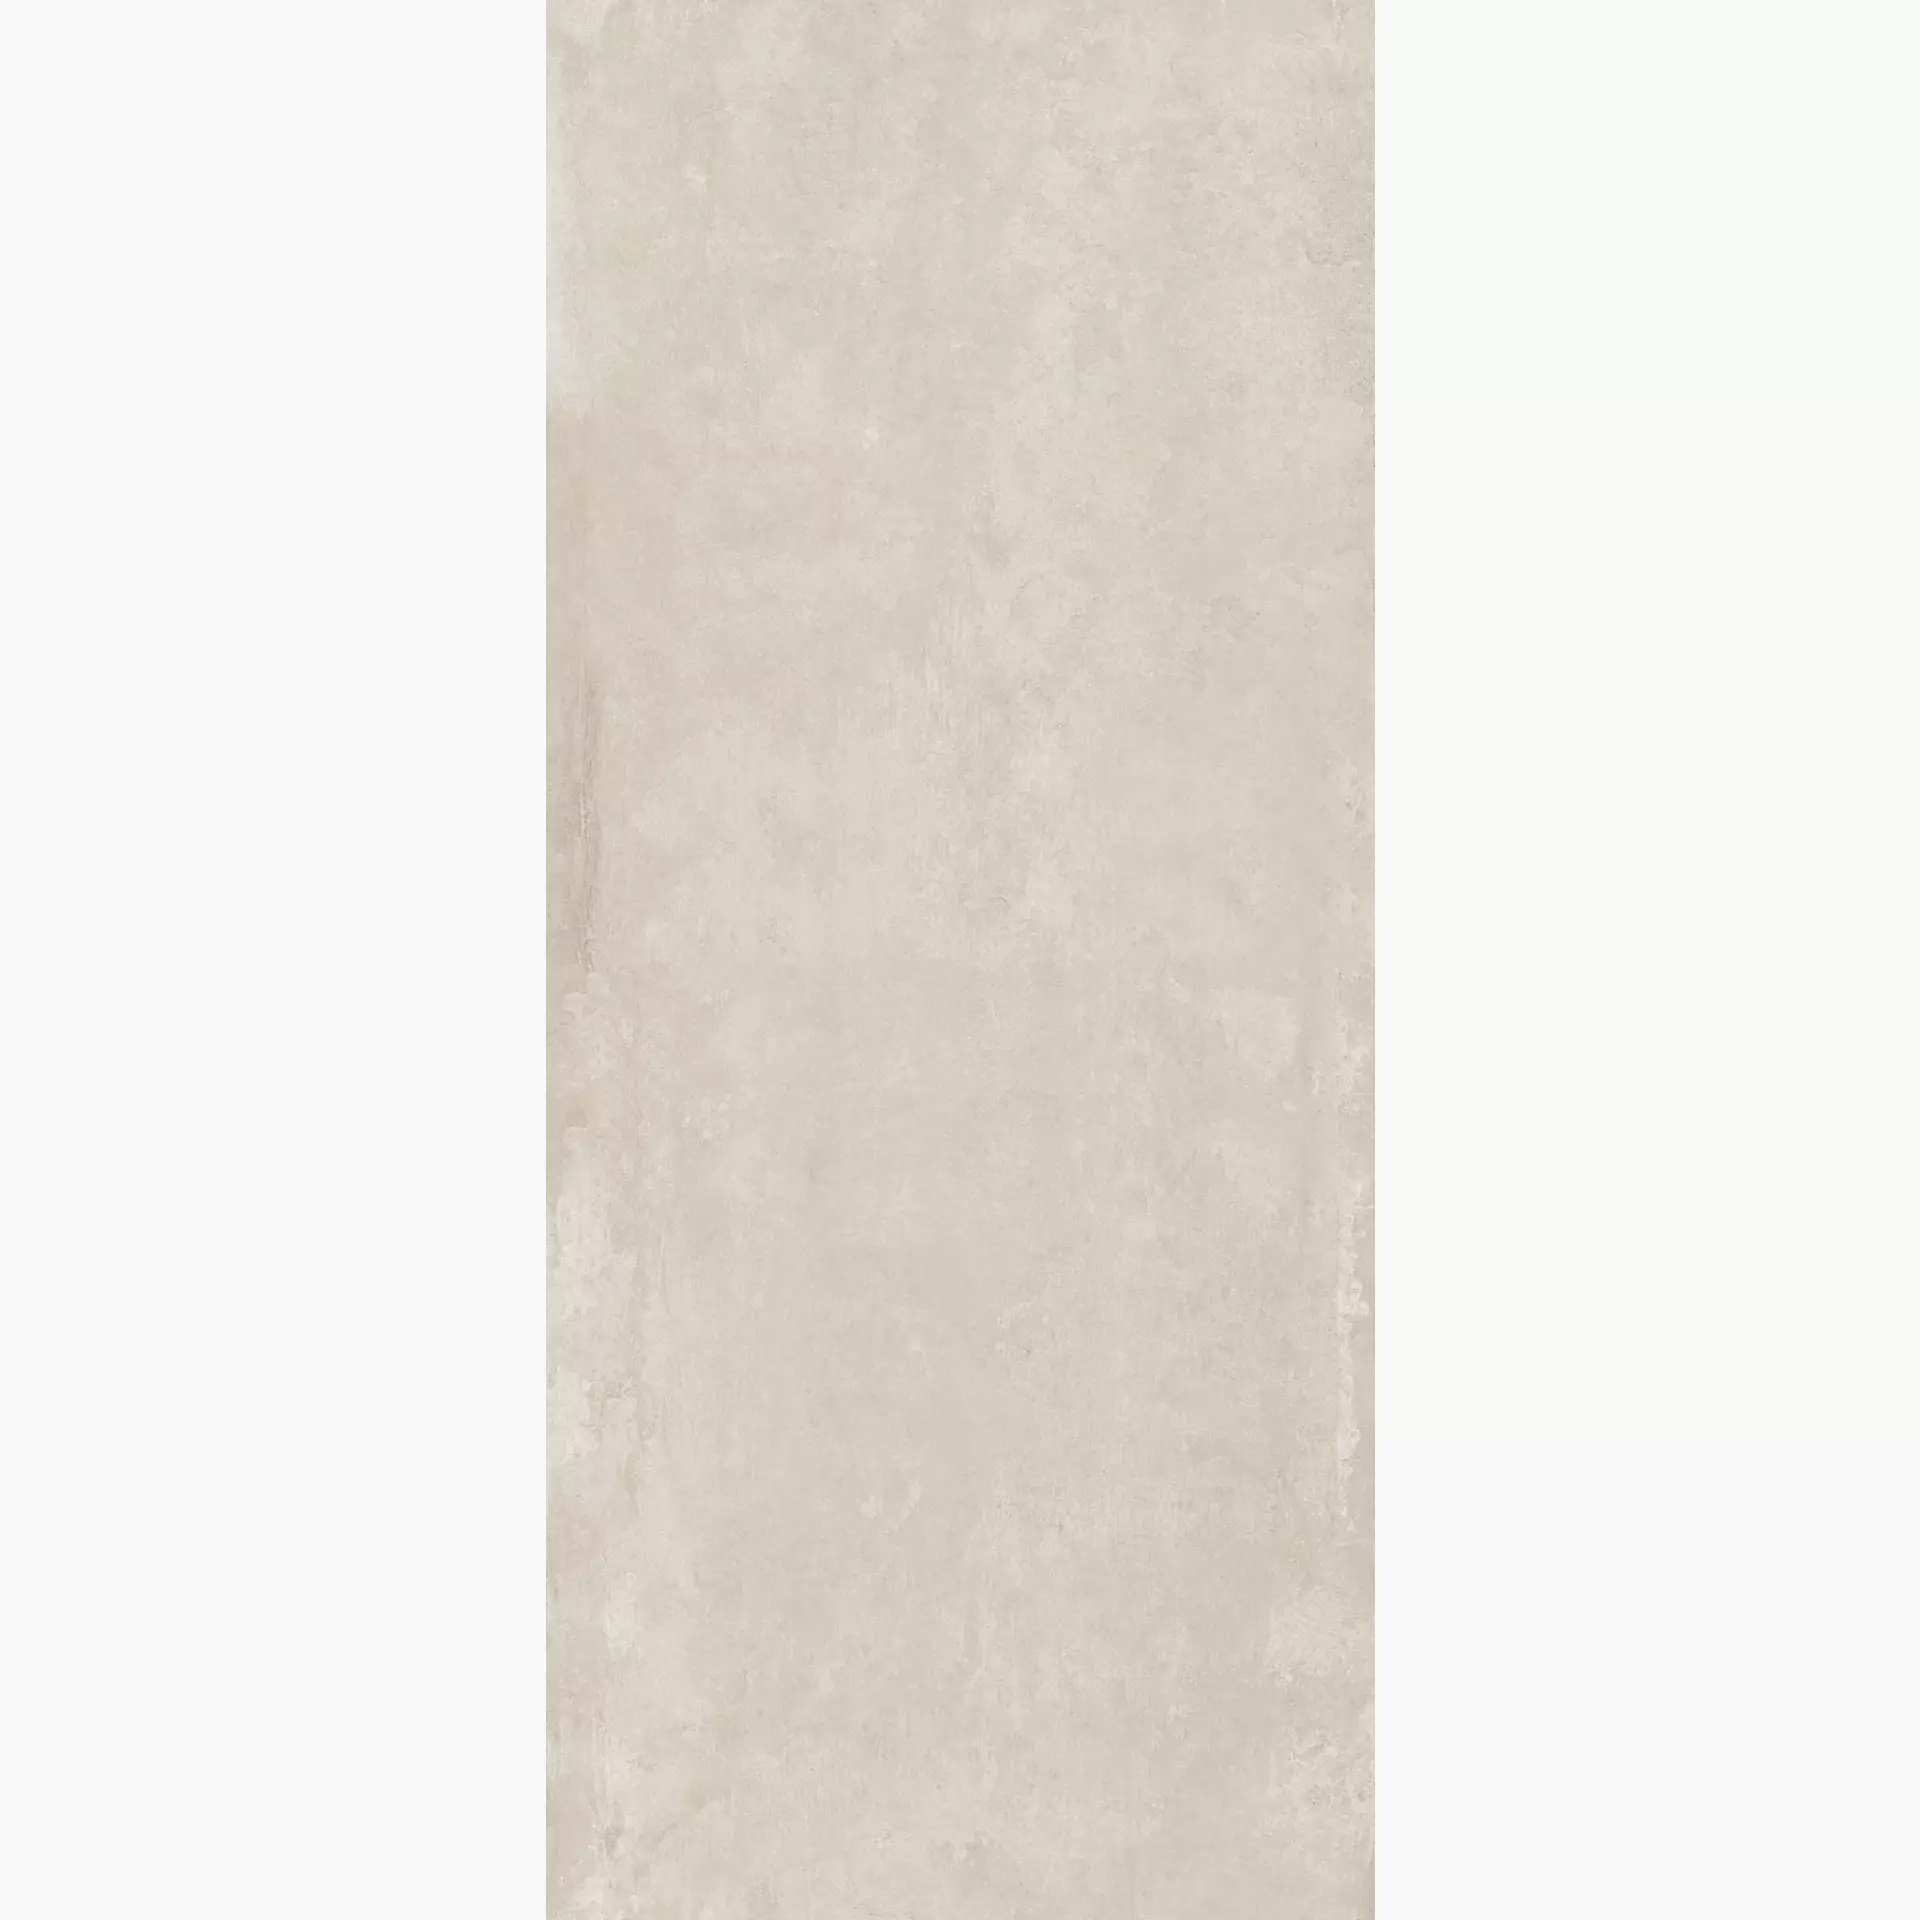 Keope Ikon White Naturale – Matt White 494B4E35 natur matt 120x278cm rektifiziert 6mm